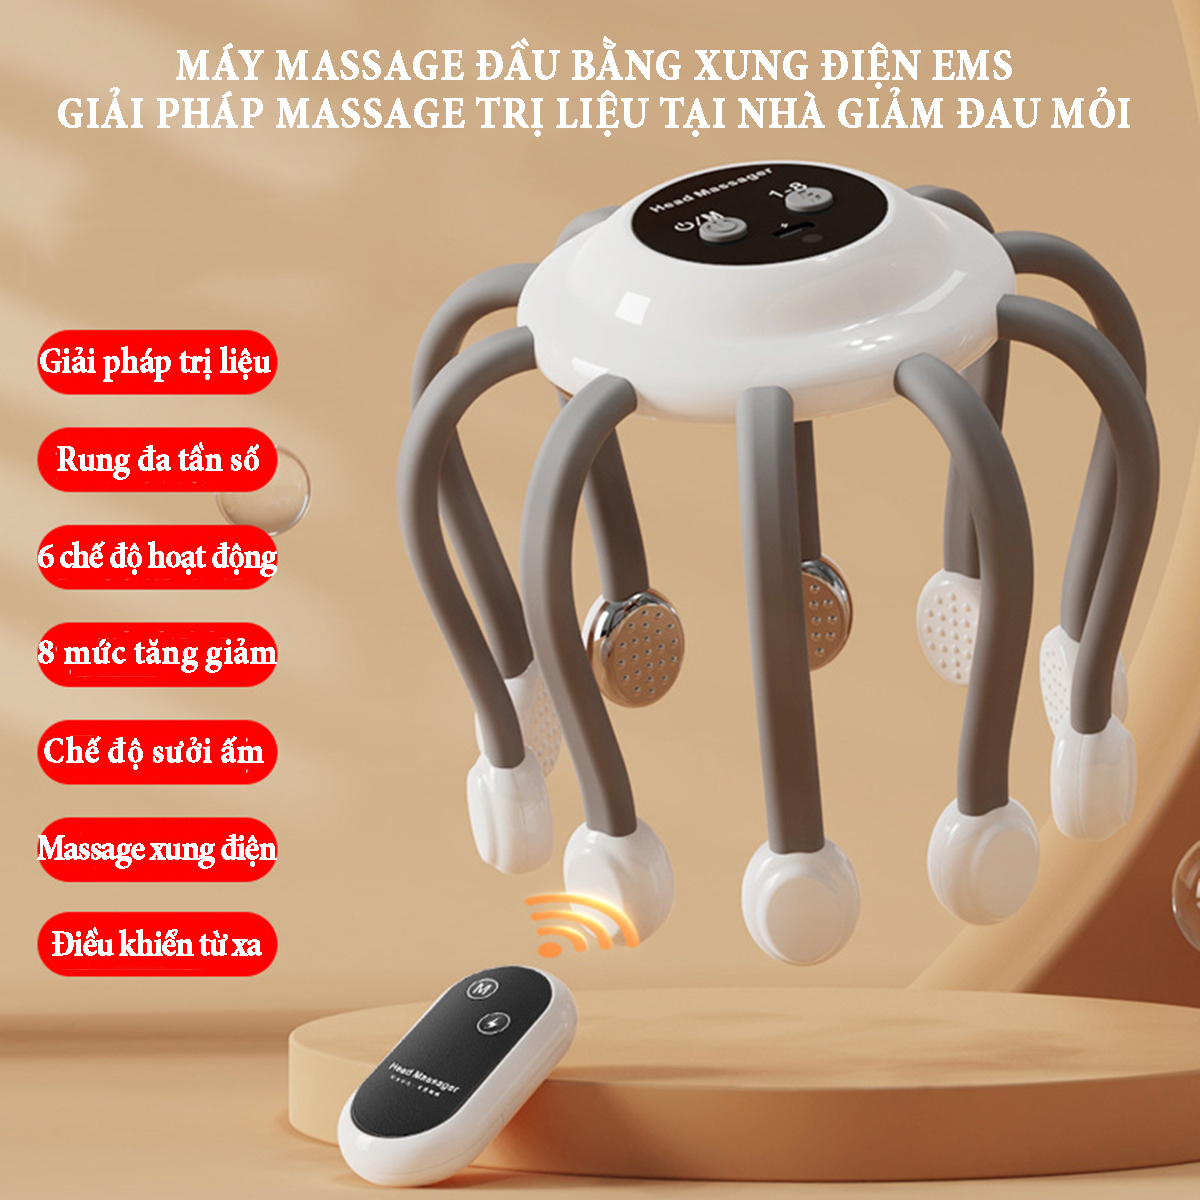 Máy massage đầu bằng xung điện EMS có remoss điều khiển từ xa lựa chọn 7 chế độ hoạt động, 8 mức điều chỉnh tăng giảm, chức năng chườm nóng giải pháp massage trị liệu tại nhà